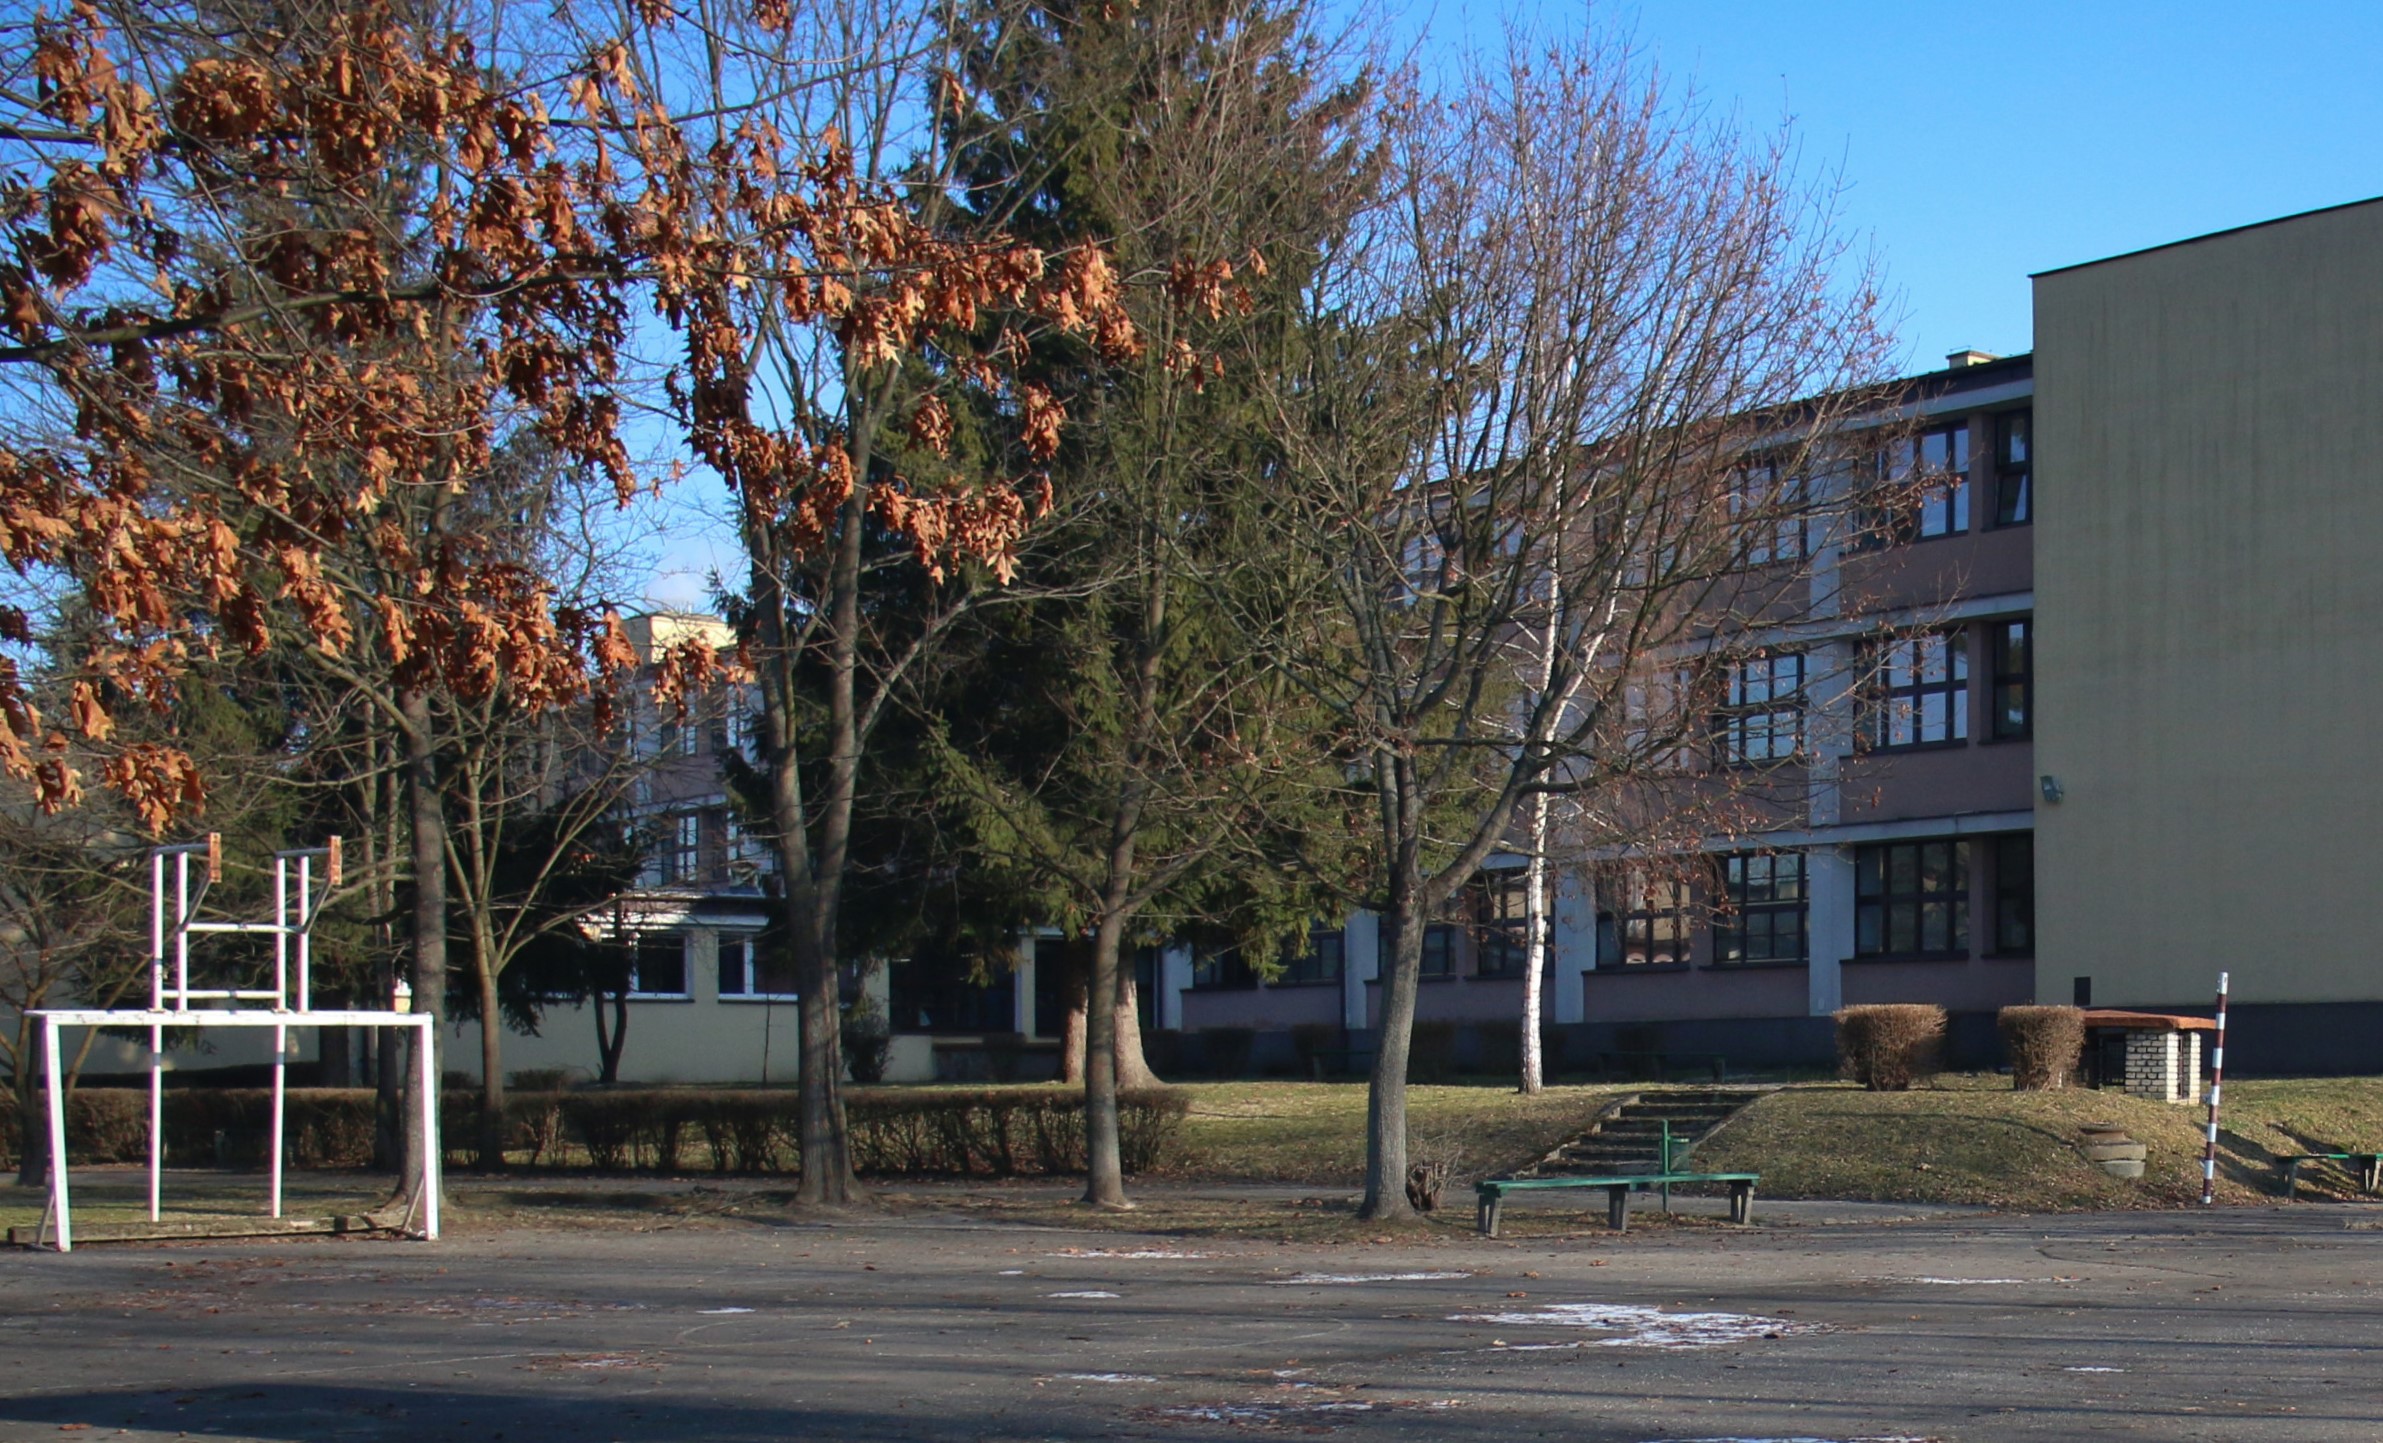 budynek pierwszego liceum ogólnokształcącego im. S. Żeromskiego w Kielcach